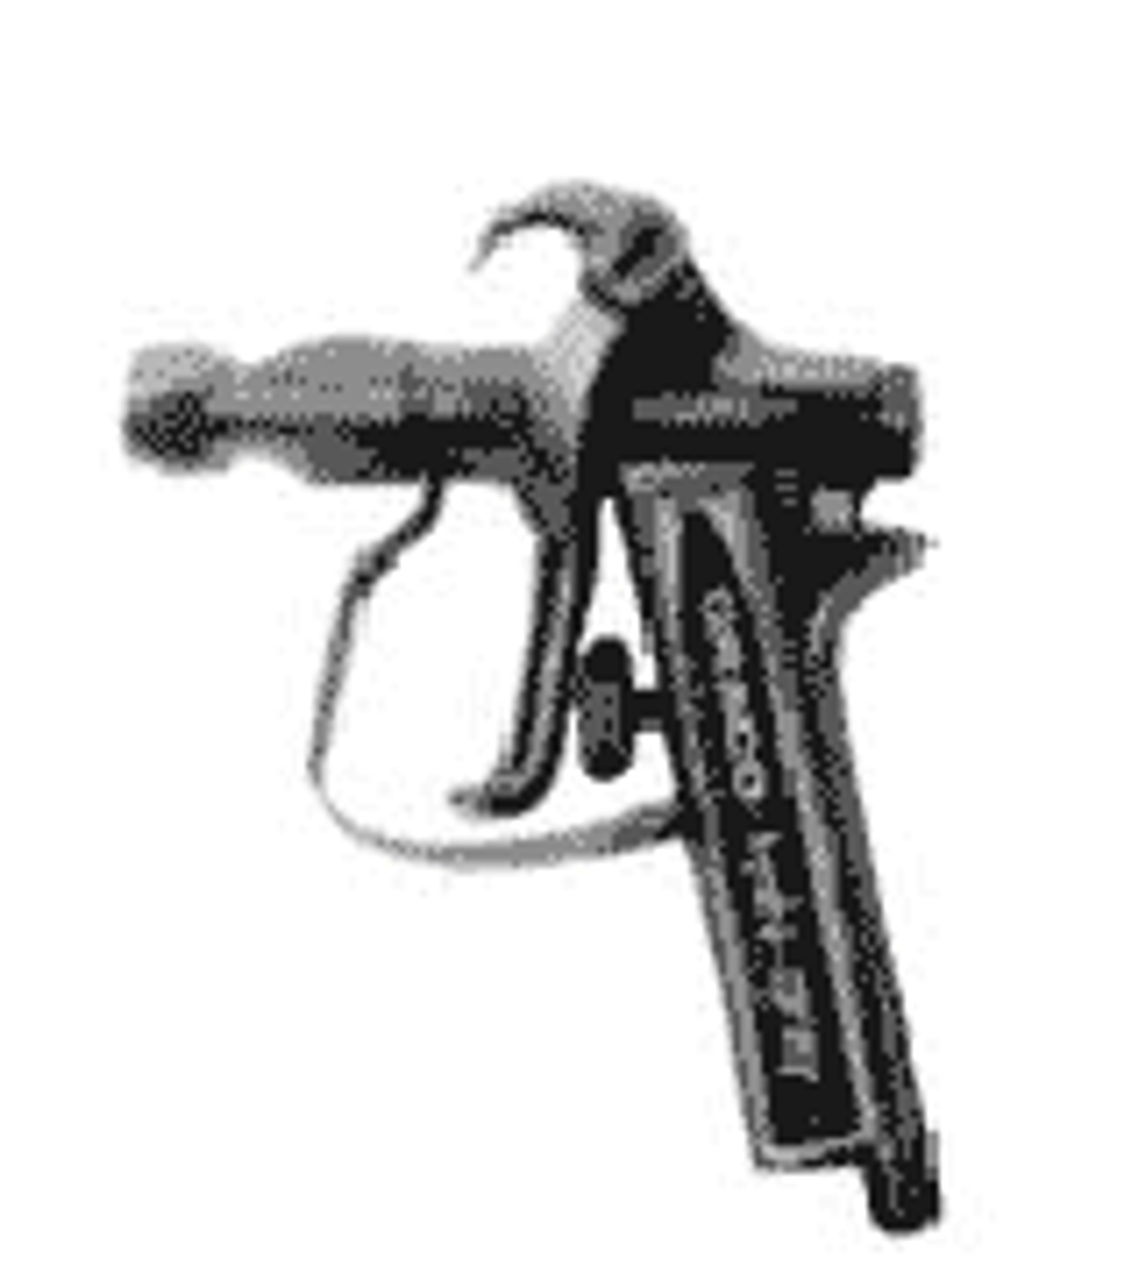 IMPA 270121 TETRA HH-Gun, Airless Paint Spray Hand Gun, 500 bar + tip nut, golden gun TETRA